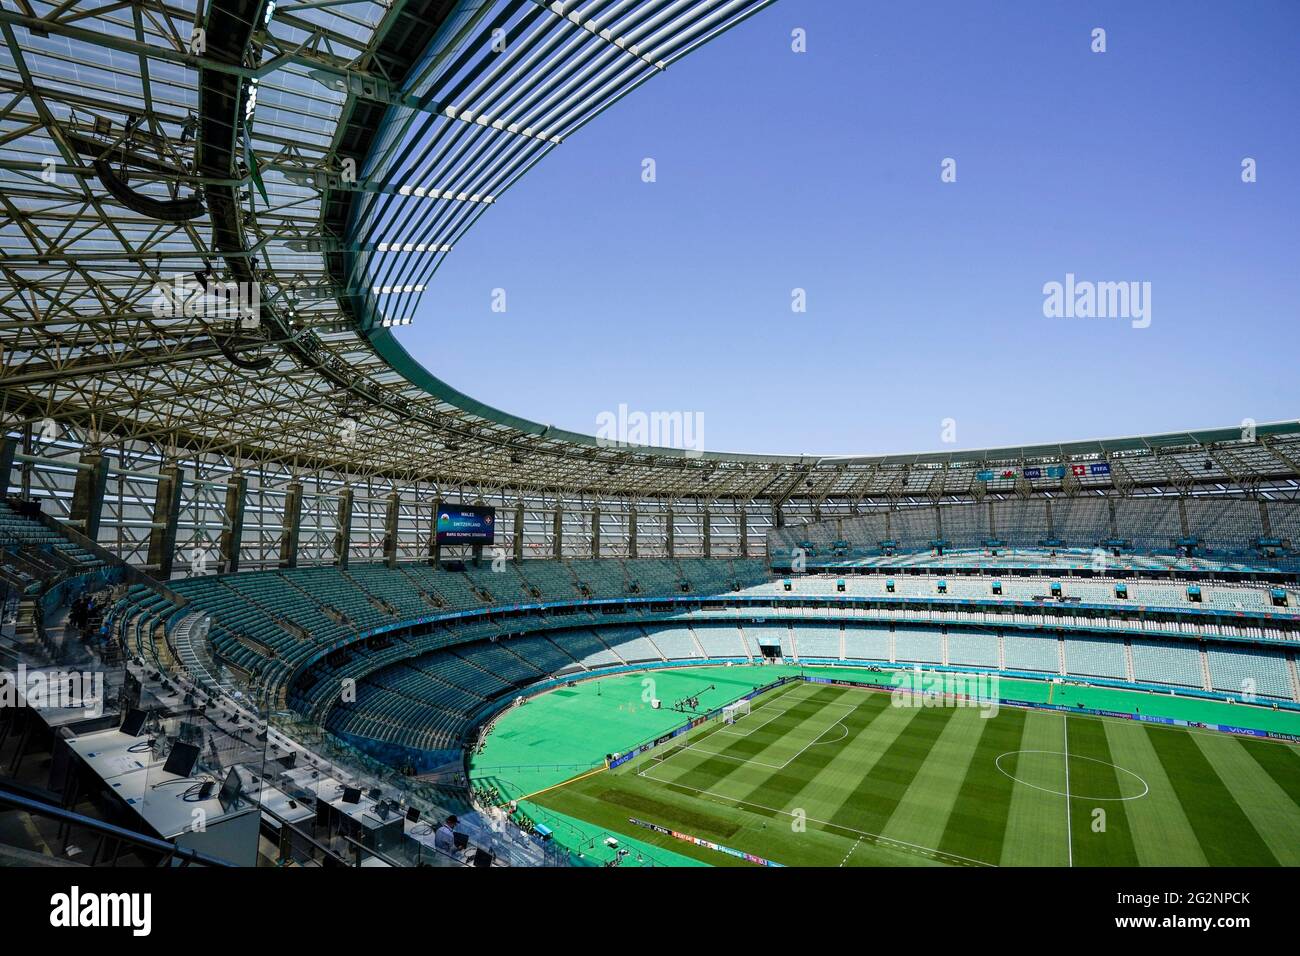 Stadio vuoto prima della partita UEFA Euro 2020 Gruppo A allo Stadio Olimpico di Baku, Azerbaigian. Data immagine: Sabato 12 giugno 2021. Foto Stock